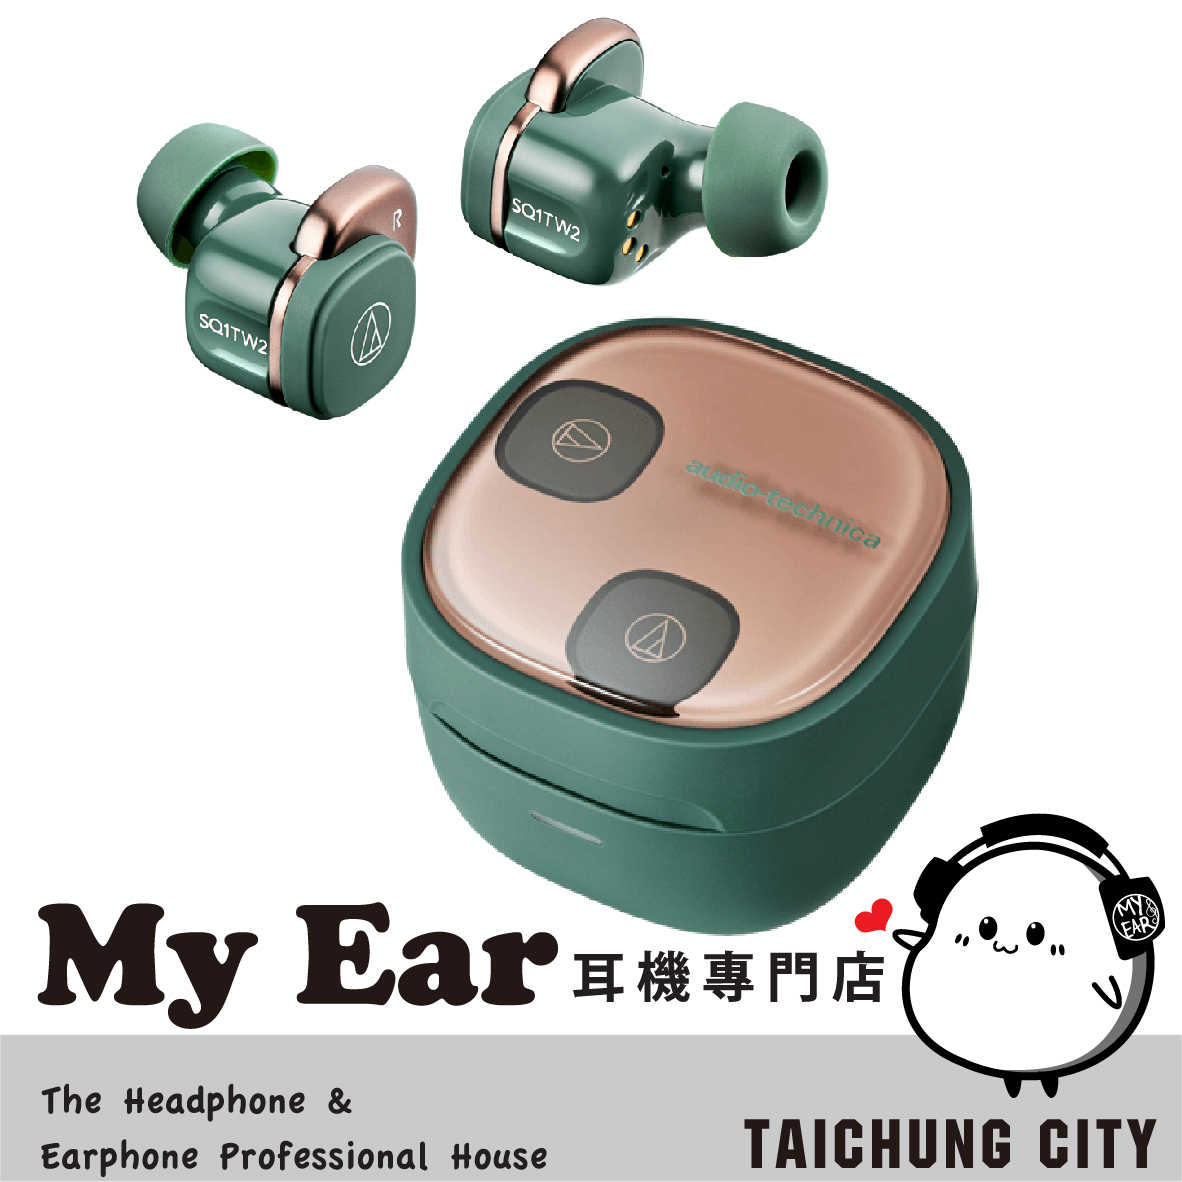 鐵三角 ATH-SQ1TW2 綠色 低延遲 可單耳 IPX5 真無線 藍芽 耳機 | My Ear 耳機專門店